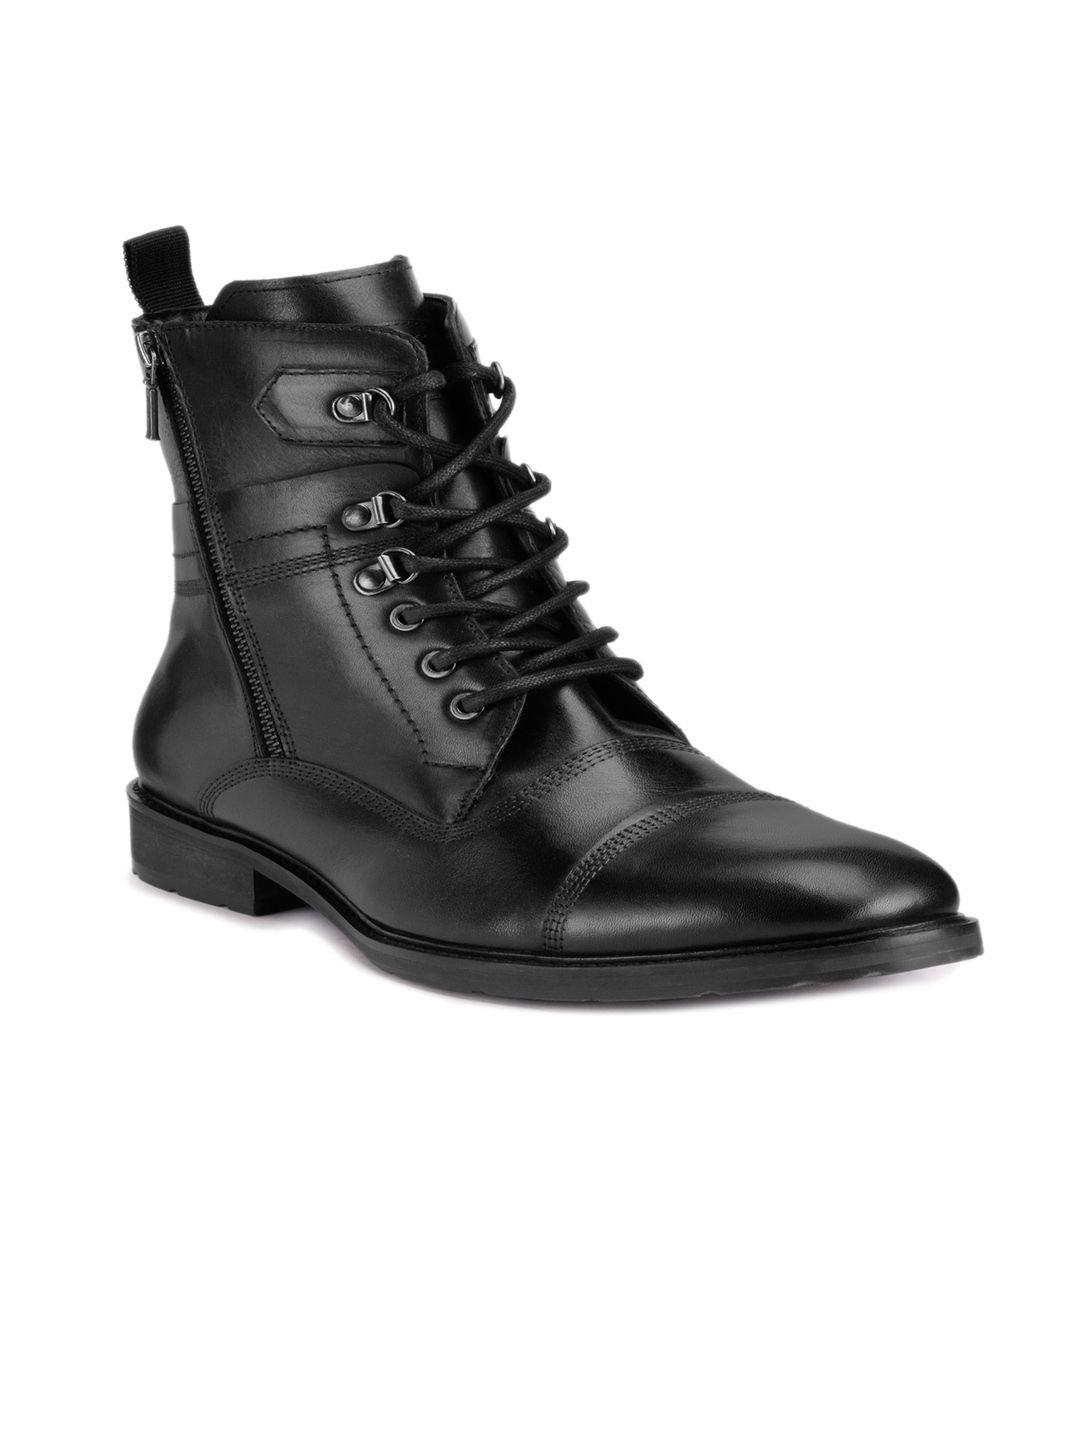 teakwood leathers men mid top block heel leather biker boots